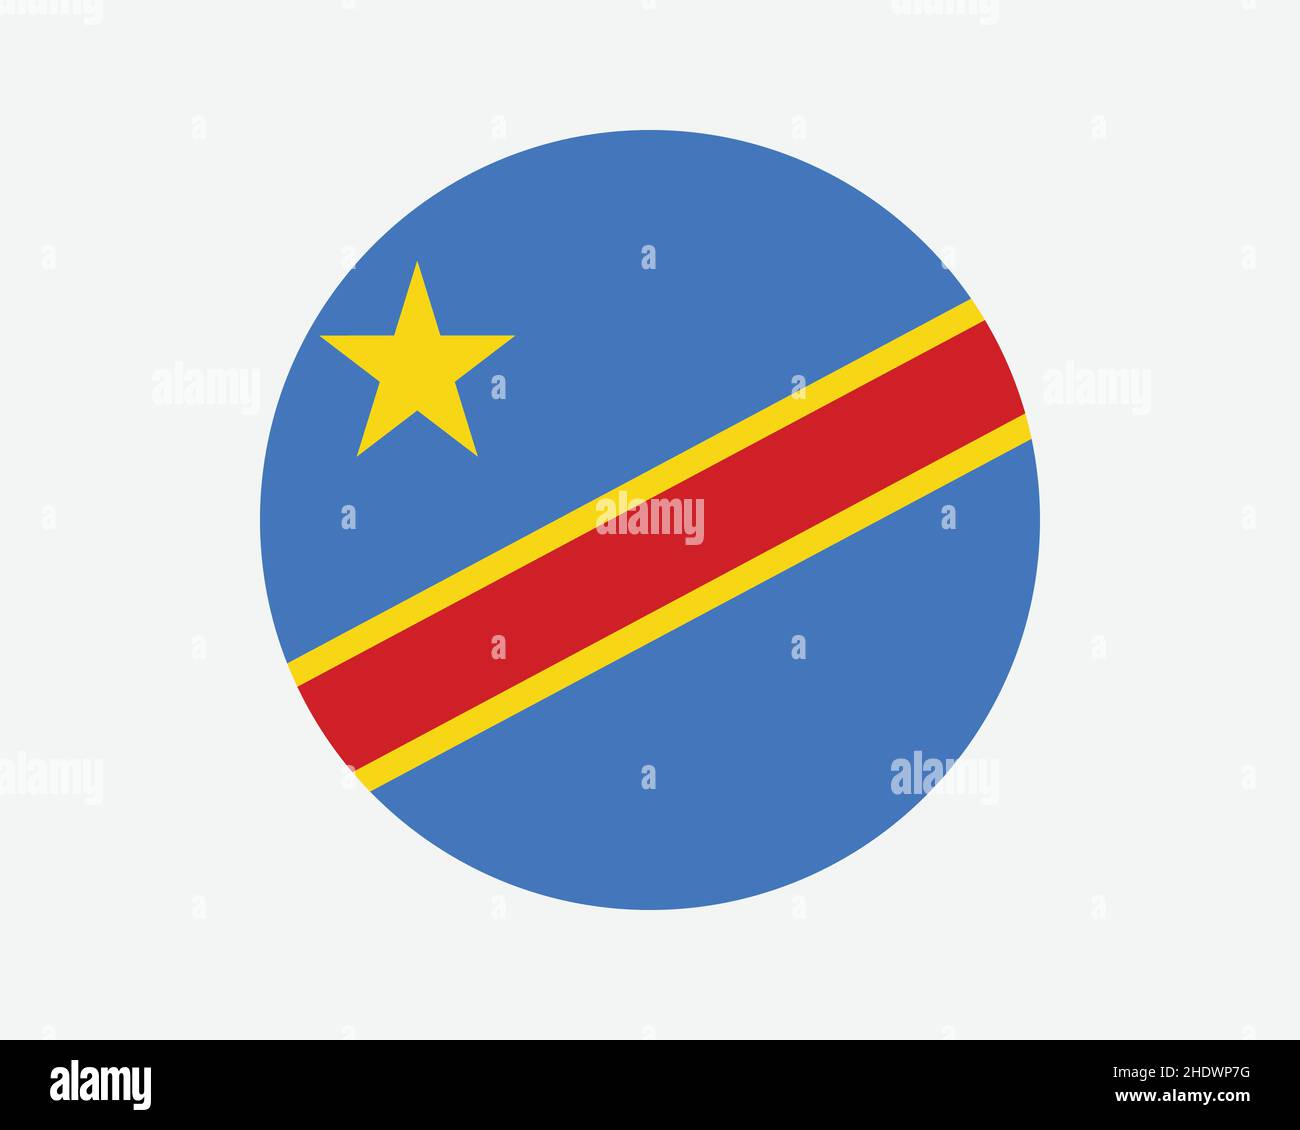 Congo Kinshasa drapeau de pays.Circulaire drapeau national de la RDC.République démocratique du Congo cercle forme bouton bannière.Illustration du vecteur EPS. Illustration de Vecteur